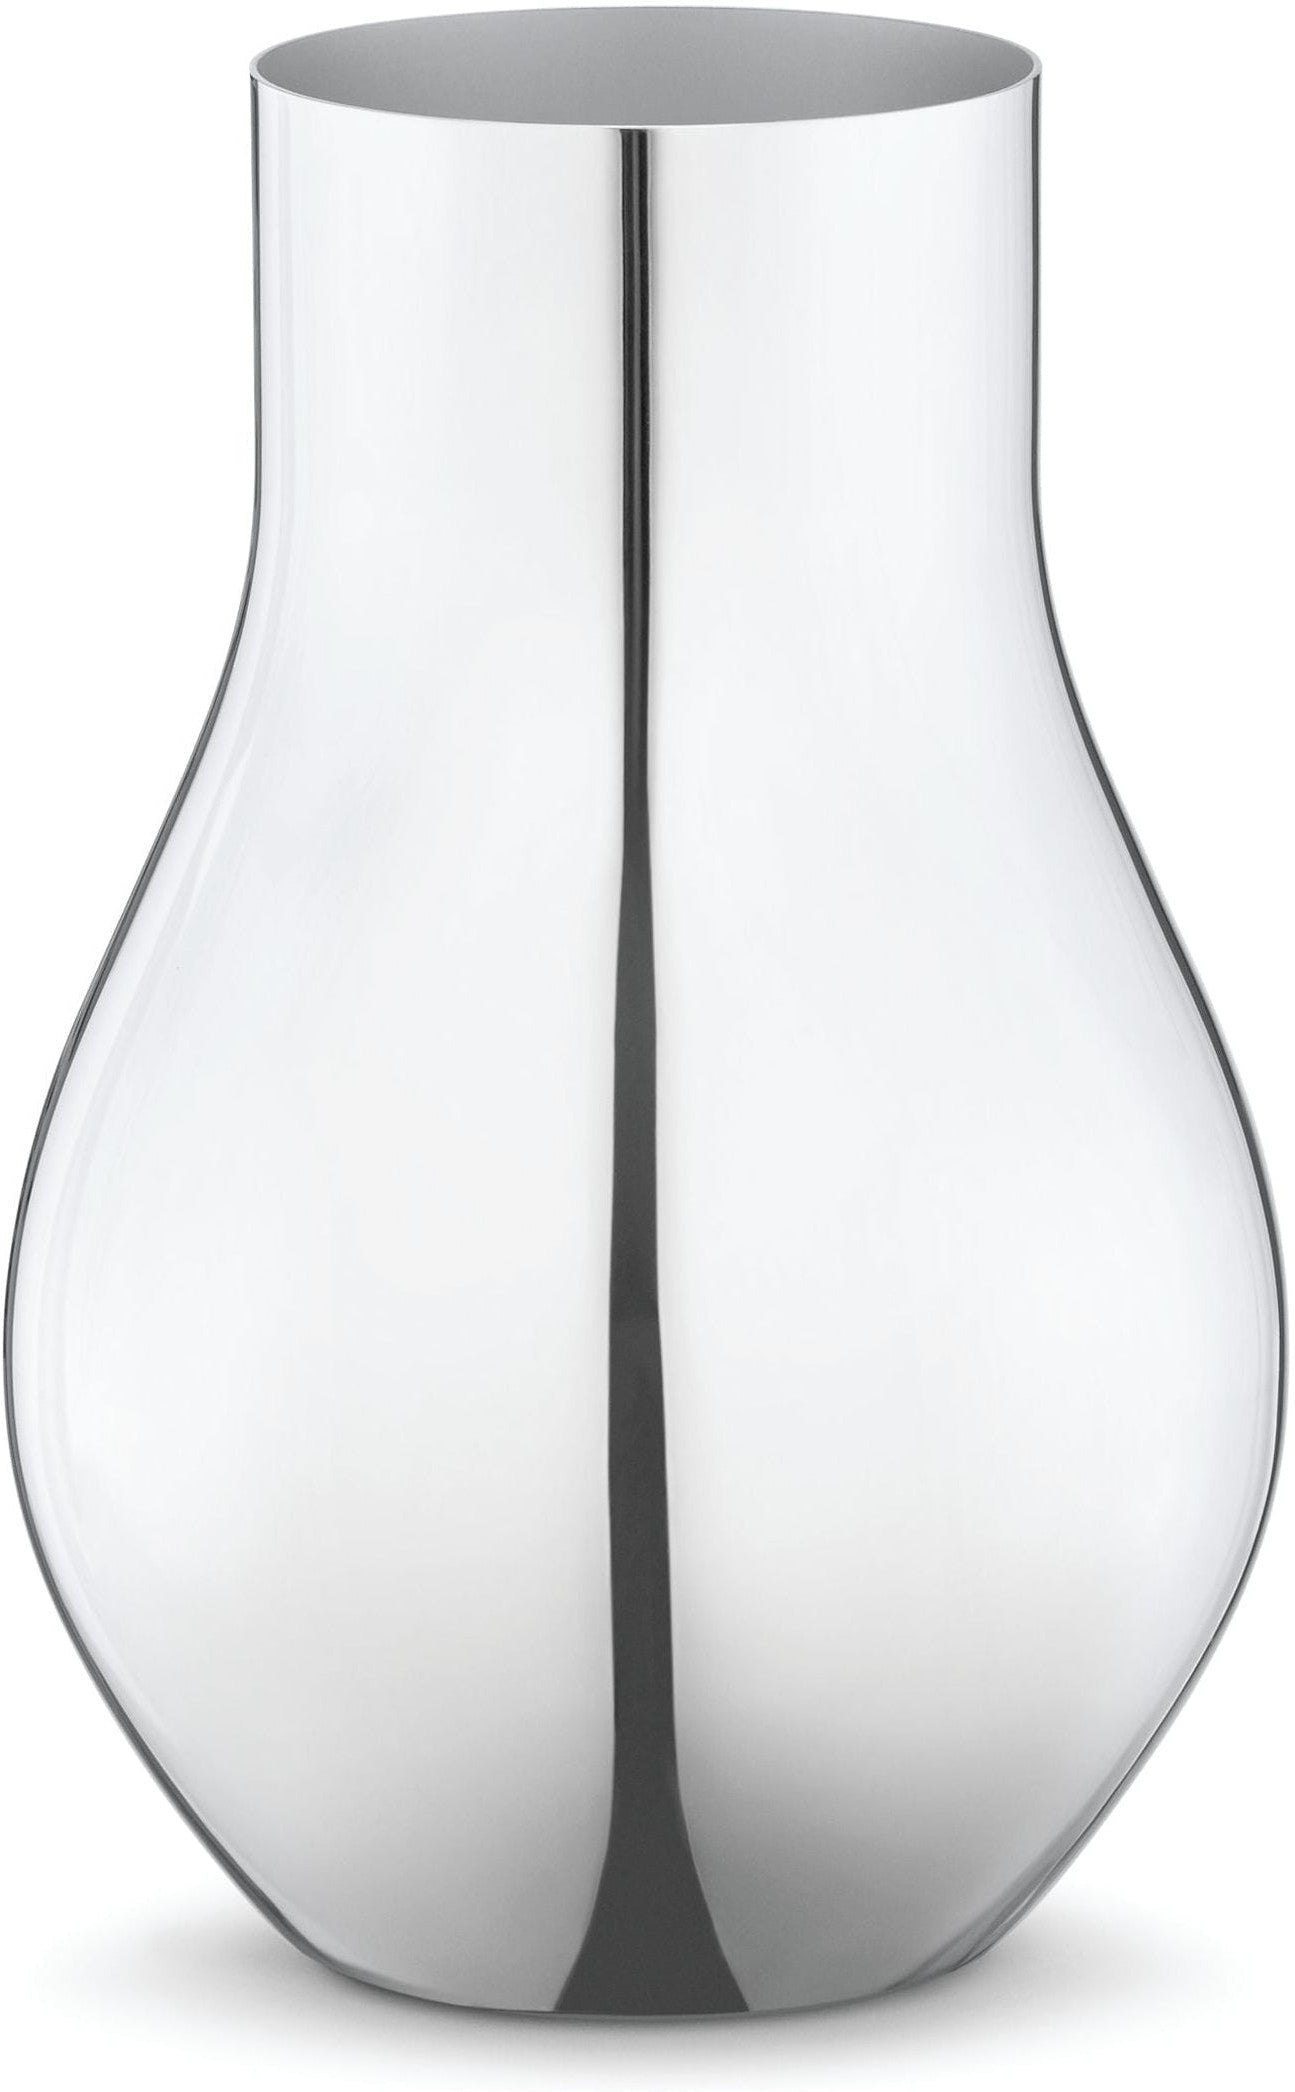 Georg Jensen Cafu Vase en acier inoxydable, 22 cm